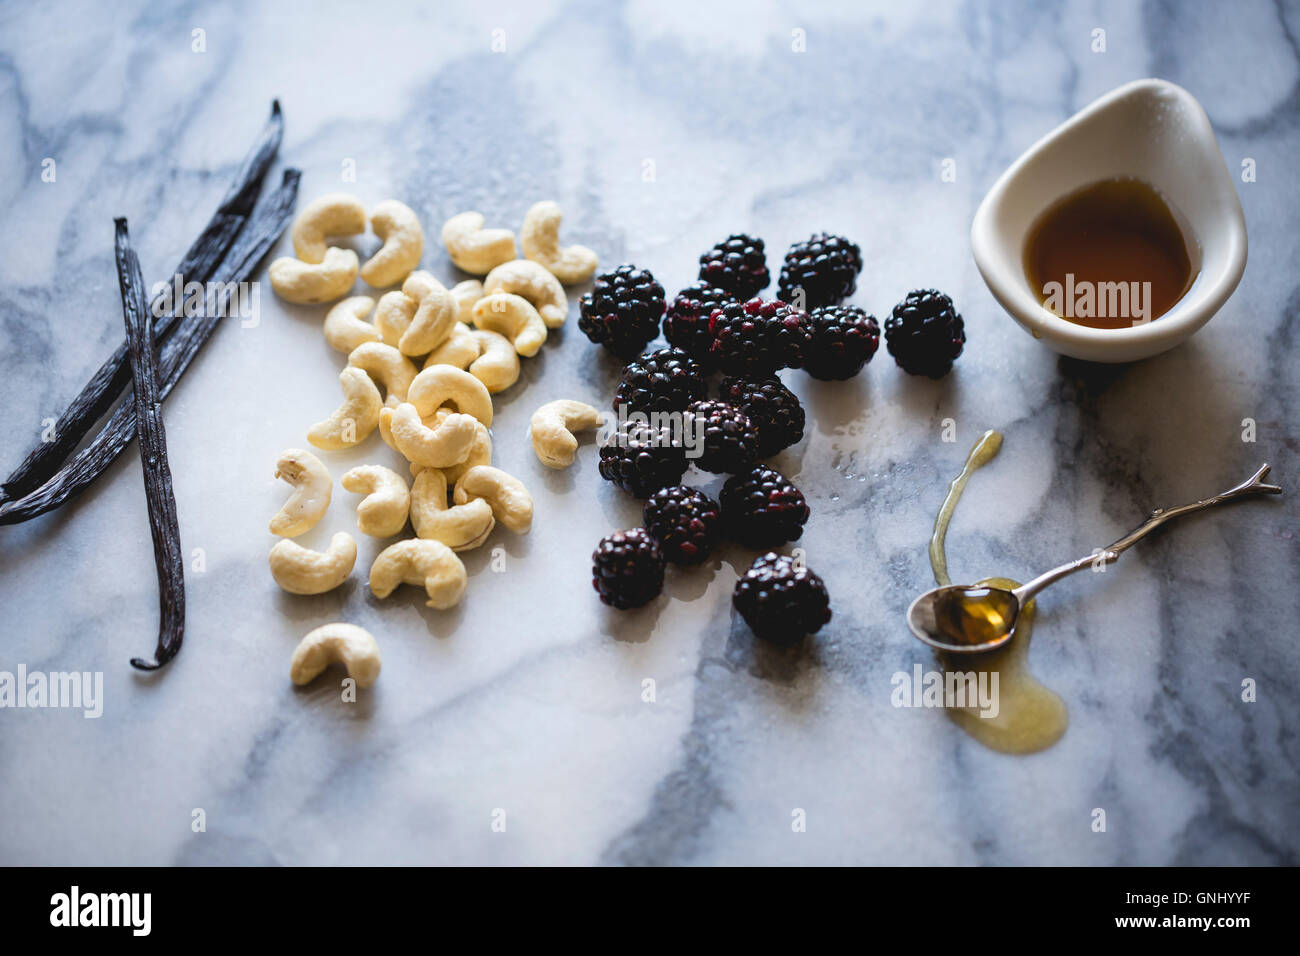 Ingrédients sur une surface de travail en marbre. Les mûres, les noix de cajou, miel, vanille. Banque D'Images